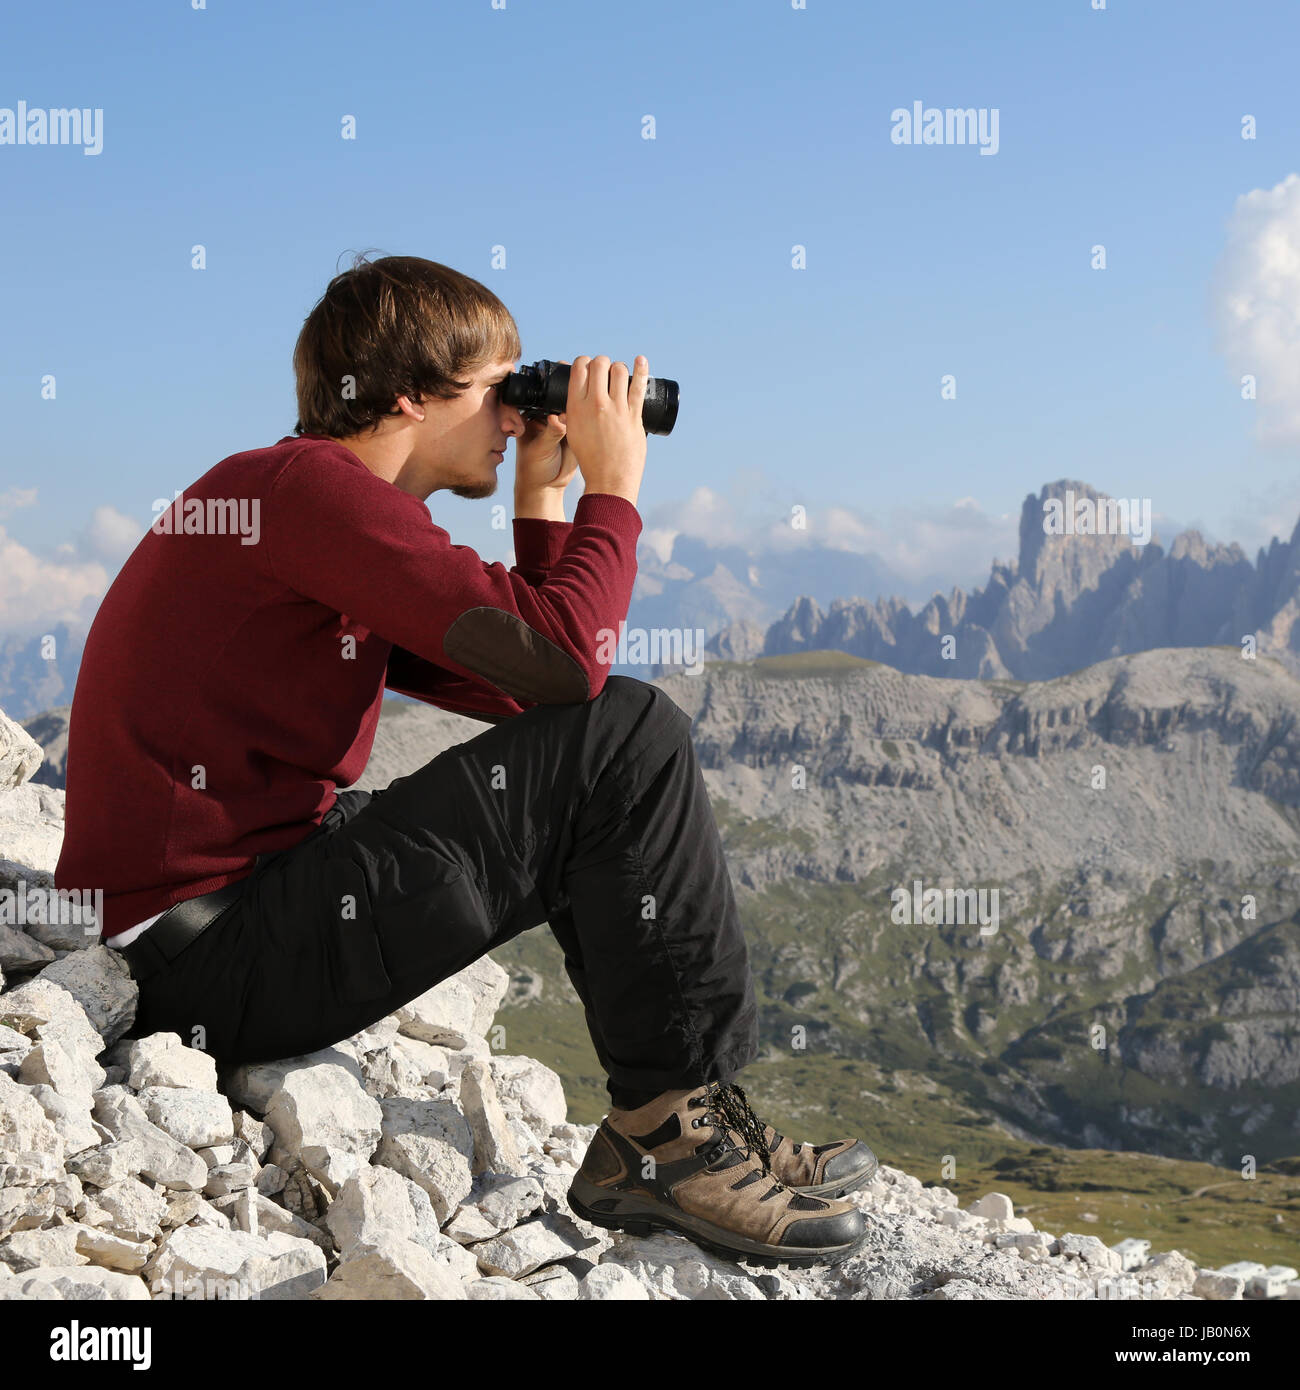 Ein junger Mann schaut durch ein Fernglas und sucht das Ziel Foto Stock